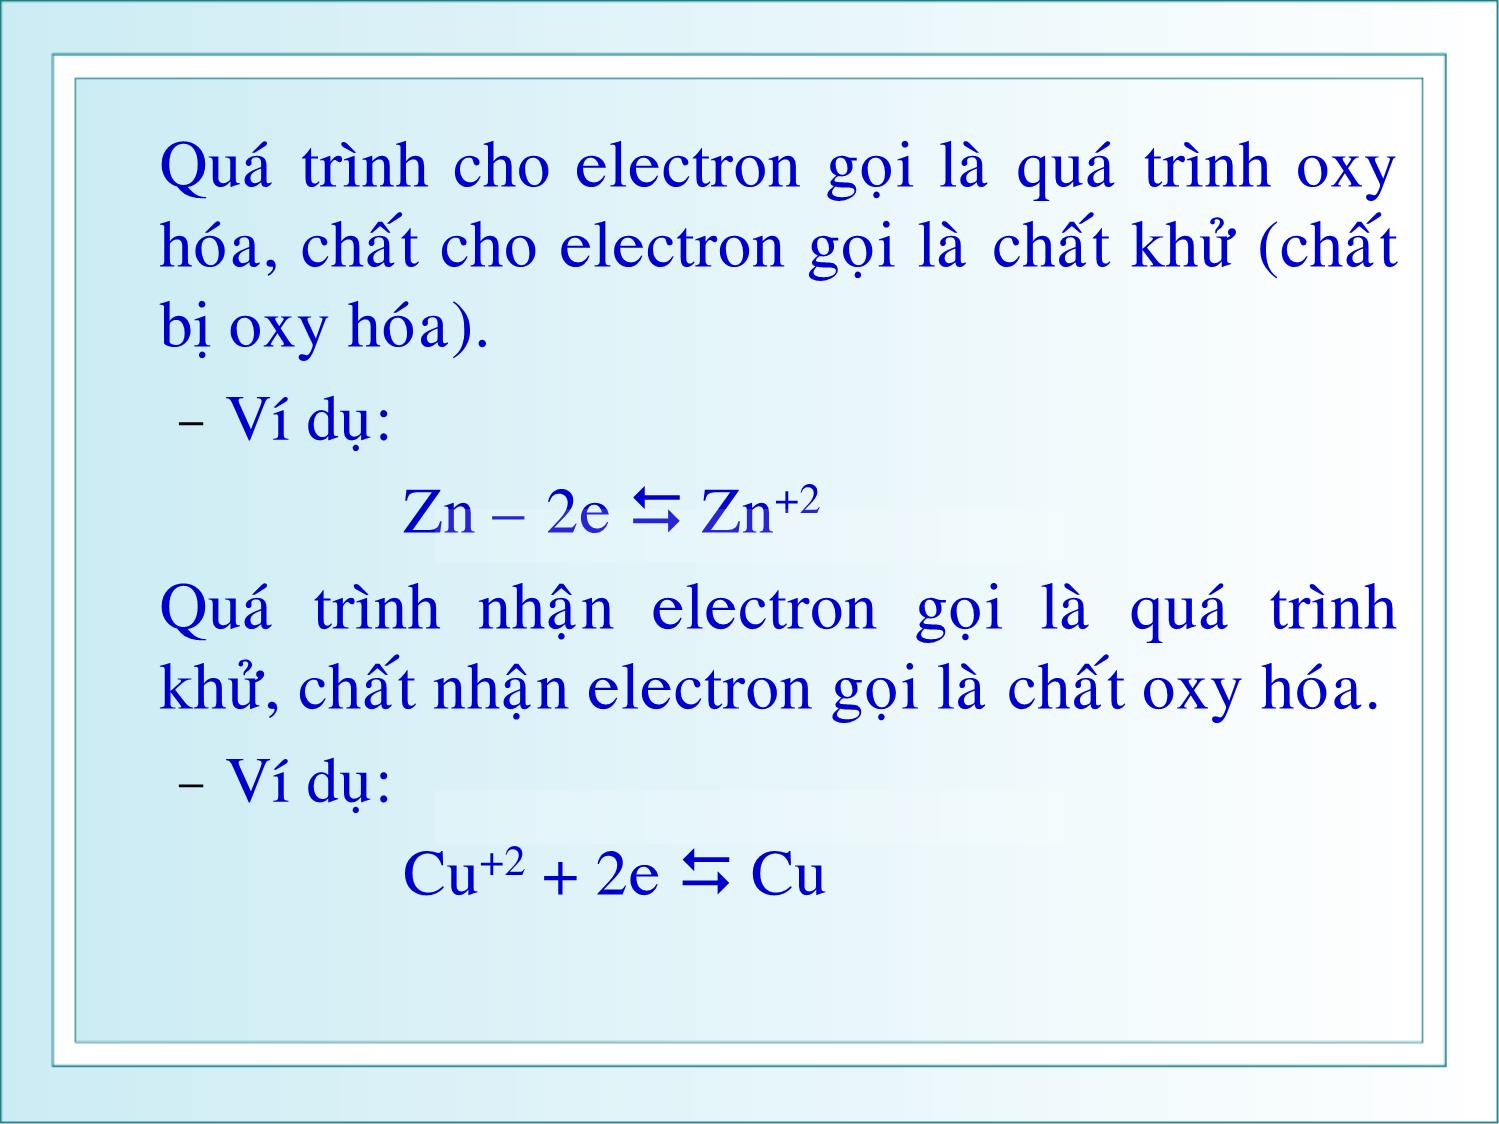 Bài giảng Hóa đại cương - Chương 16: Điện hóa học - Huỳnh Kỳ Phương Hạ trang 3